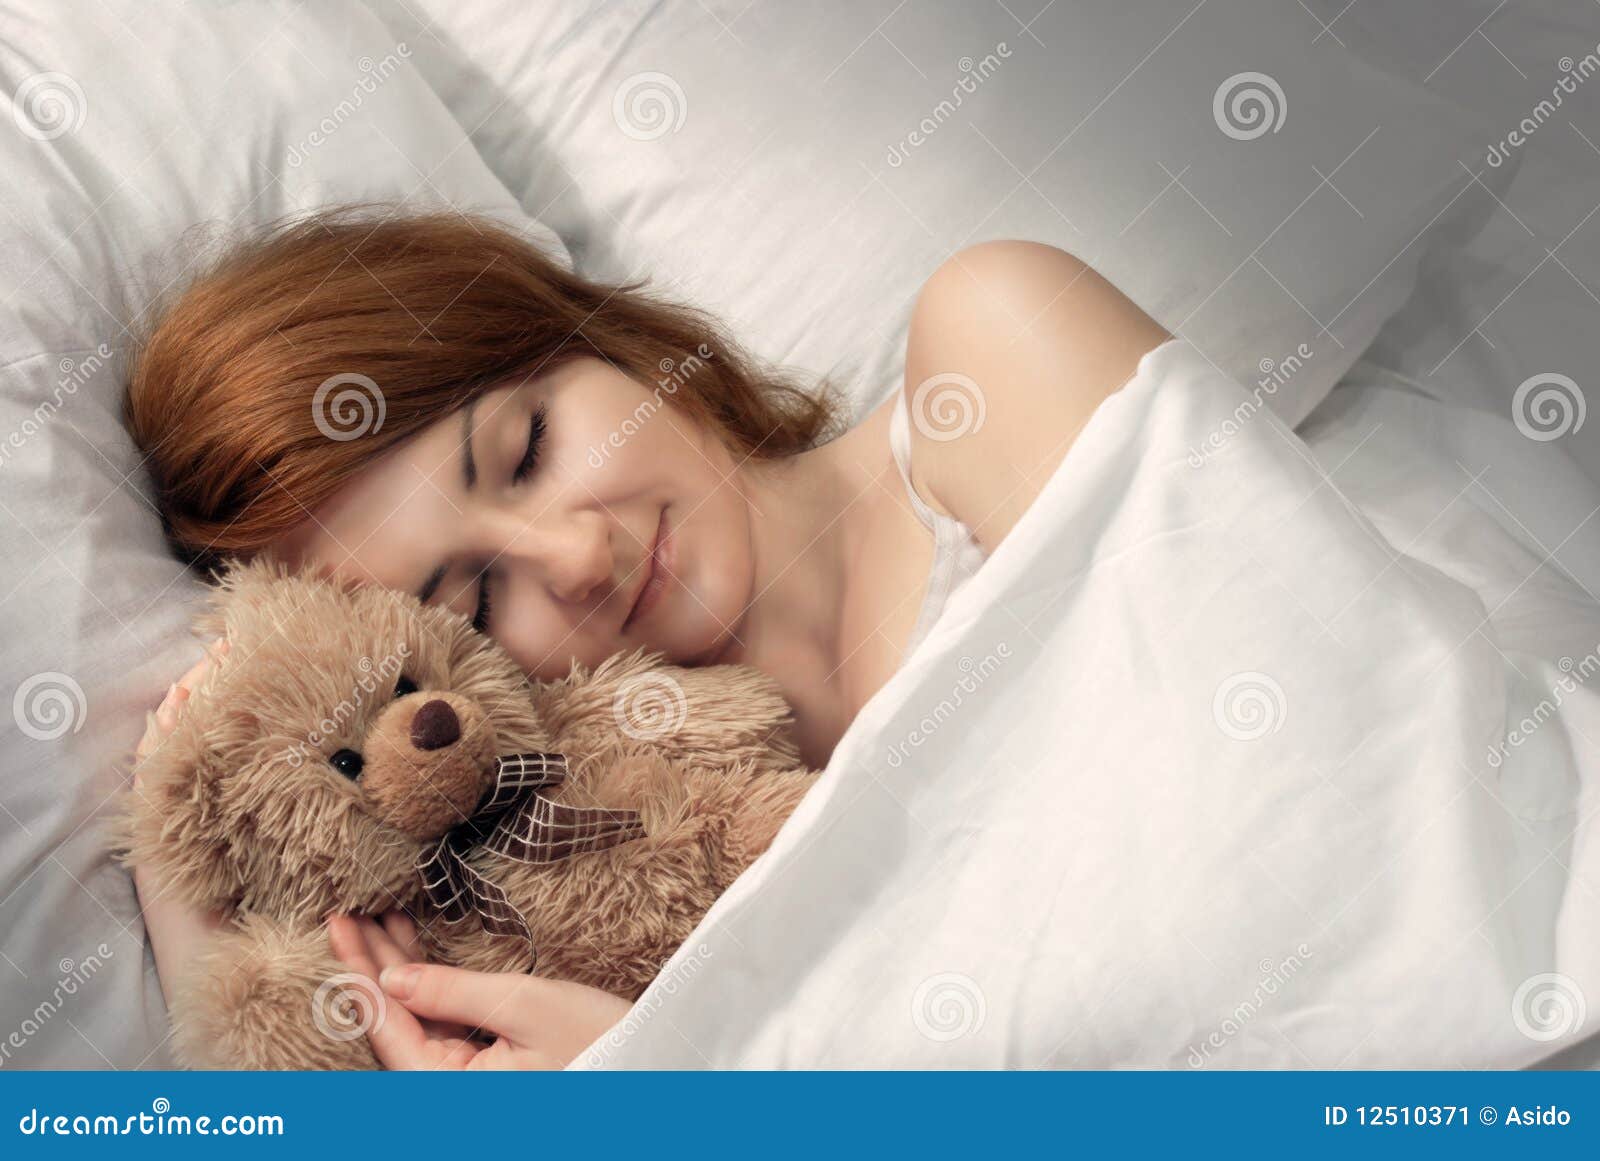 老公抱着睡的图片-图库-五毛网